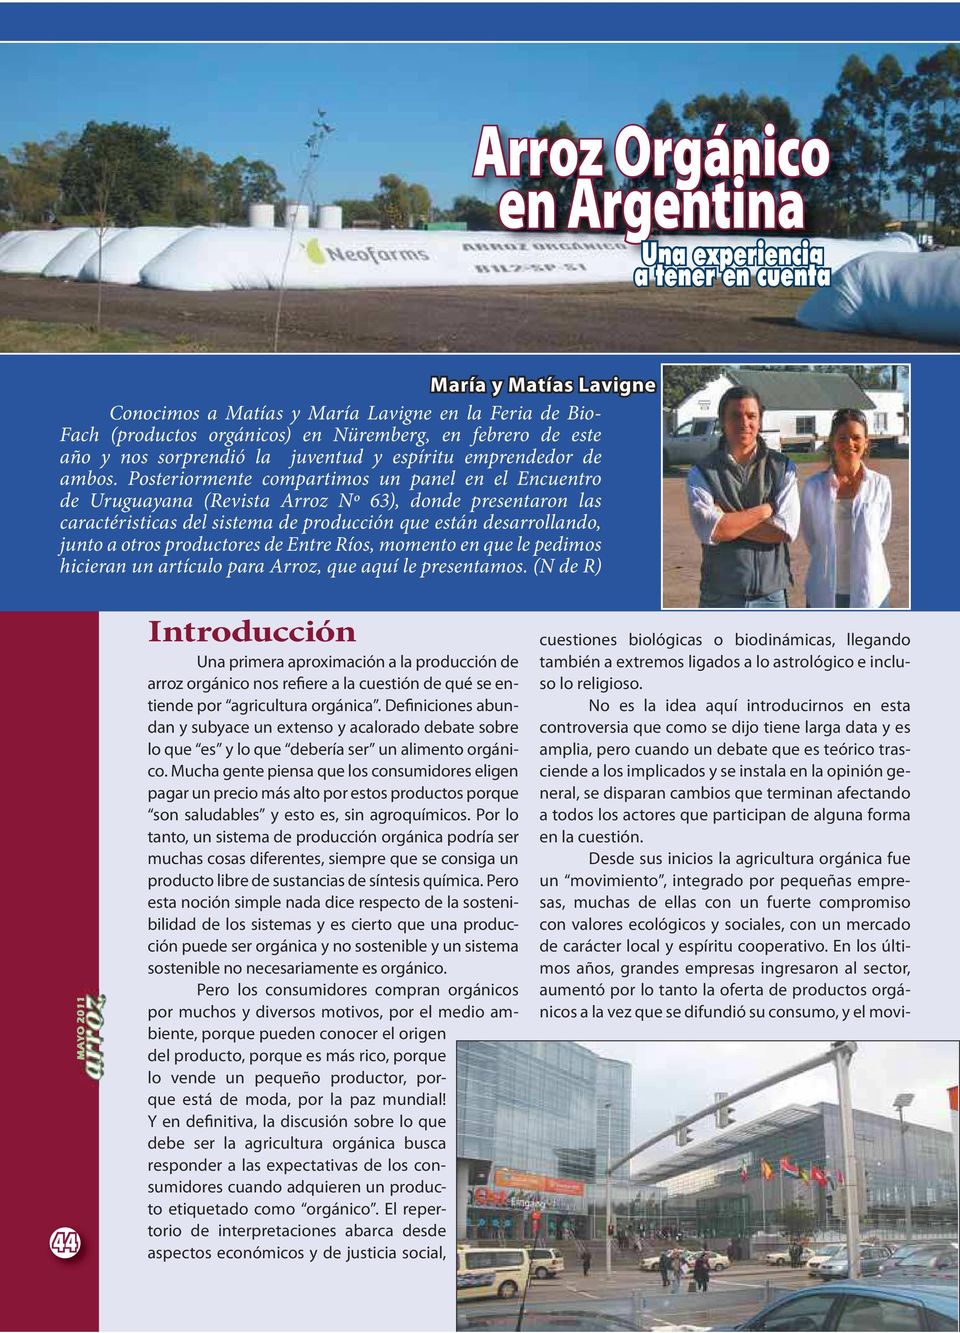 Posteriormente compartimos un panel en el Encuentro de Uruguayana (Revista Arroz Nº 63), donde presentaron las caractéristicas del sistema de producción que están desarrollando, junto a otros